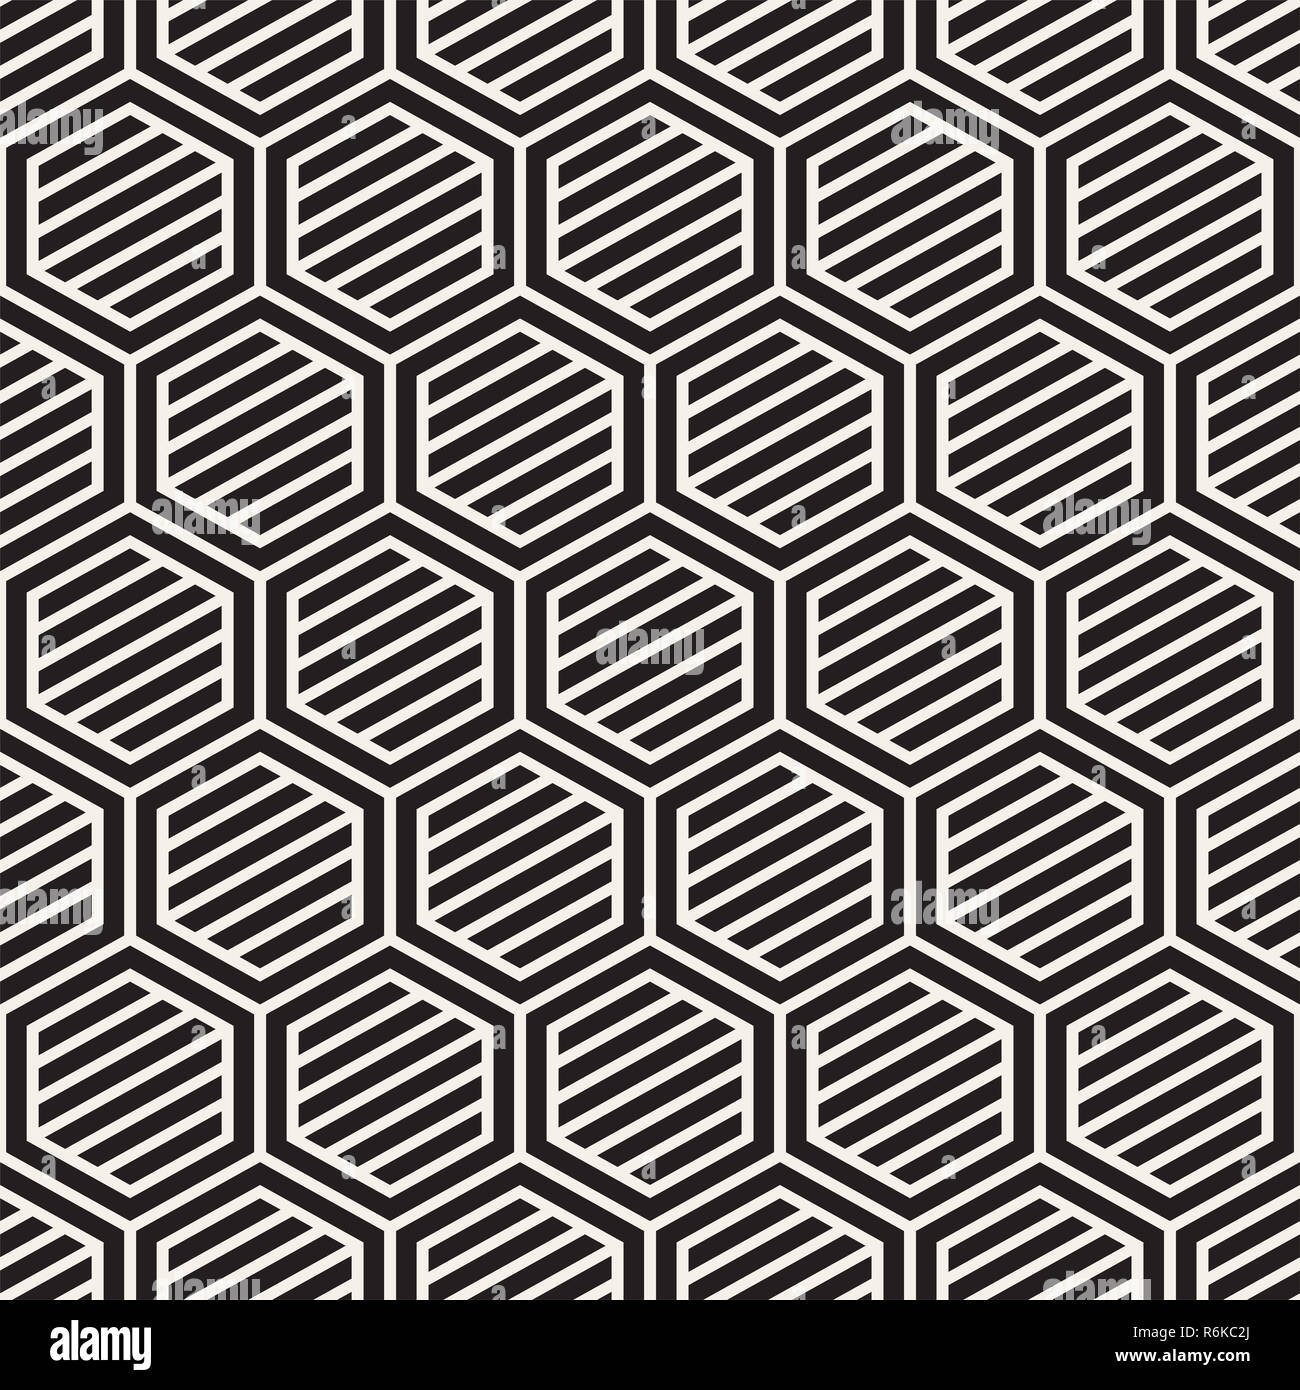 Vektor nahtlose Streifen Muster. Moderne, elegante Textur mit Schwarzweiß-Gitter. Wiederkehrende geometrische hexagonalen Gitter. Einfache lattice Design. Stockfoto